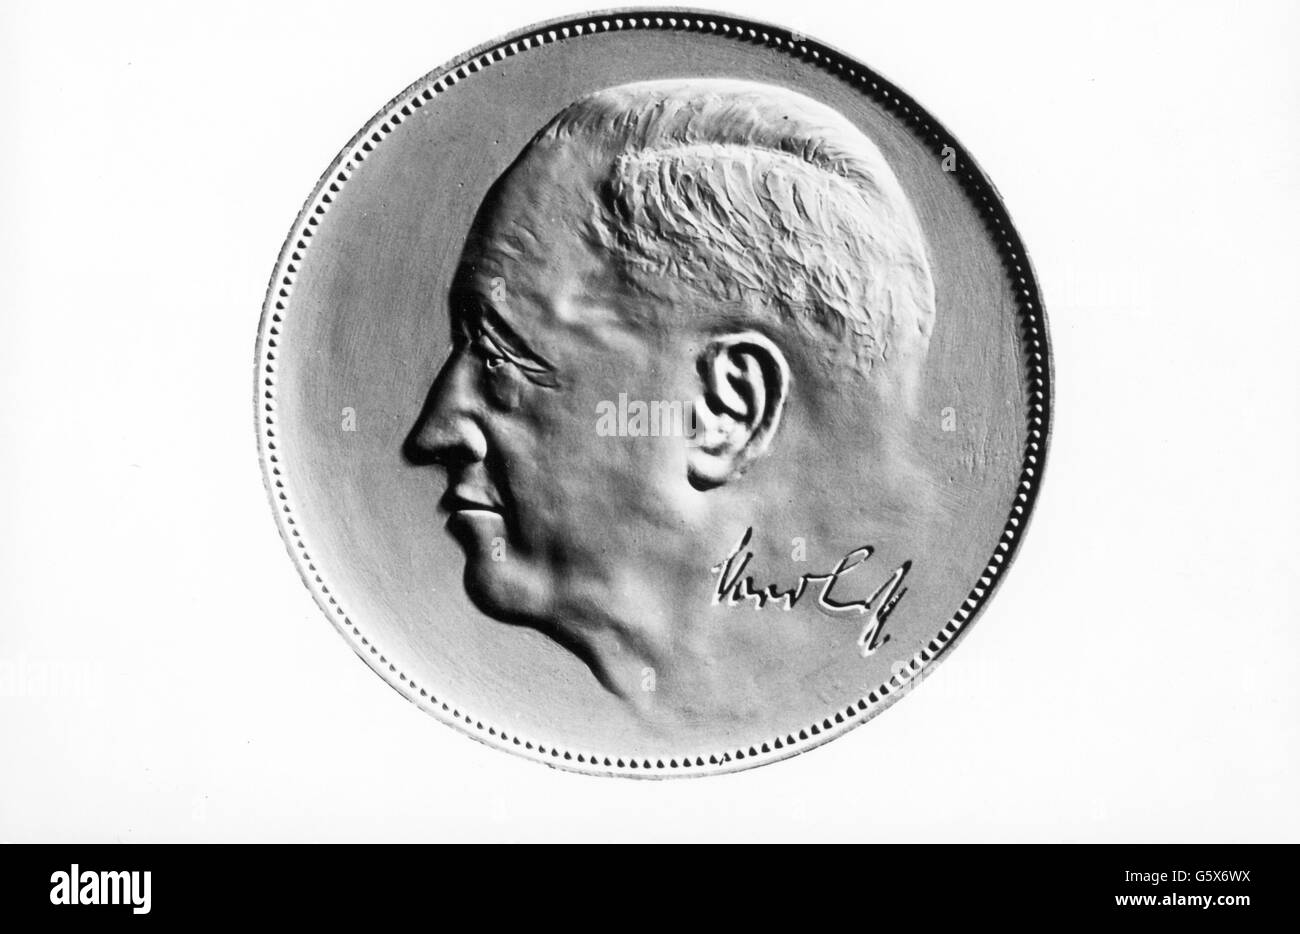 Nordhoff, Heinrich, 6.1.1899 - 12.4.1968, industriale tedesco, ritratto, moneta commemorativa in occasione di 5 milioni di veicoli VW Beetle, 1961, Foto Stock